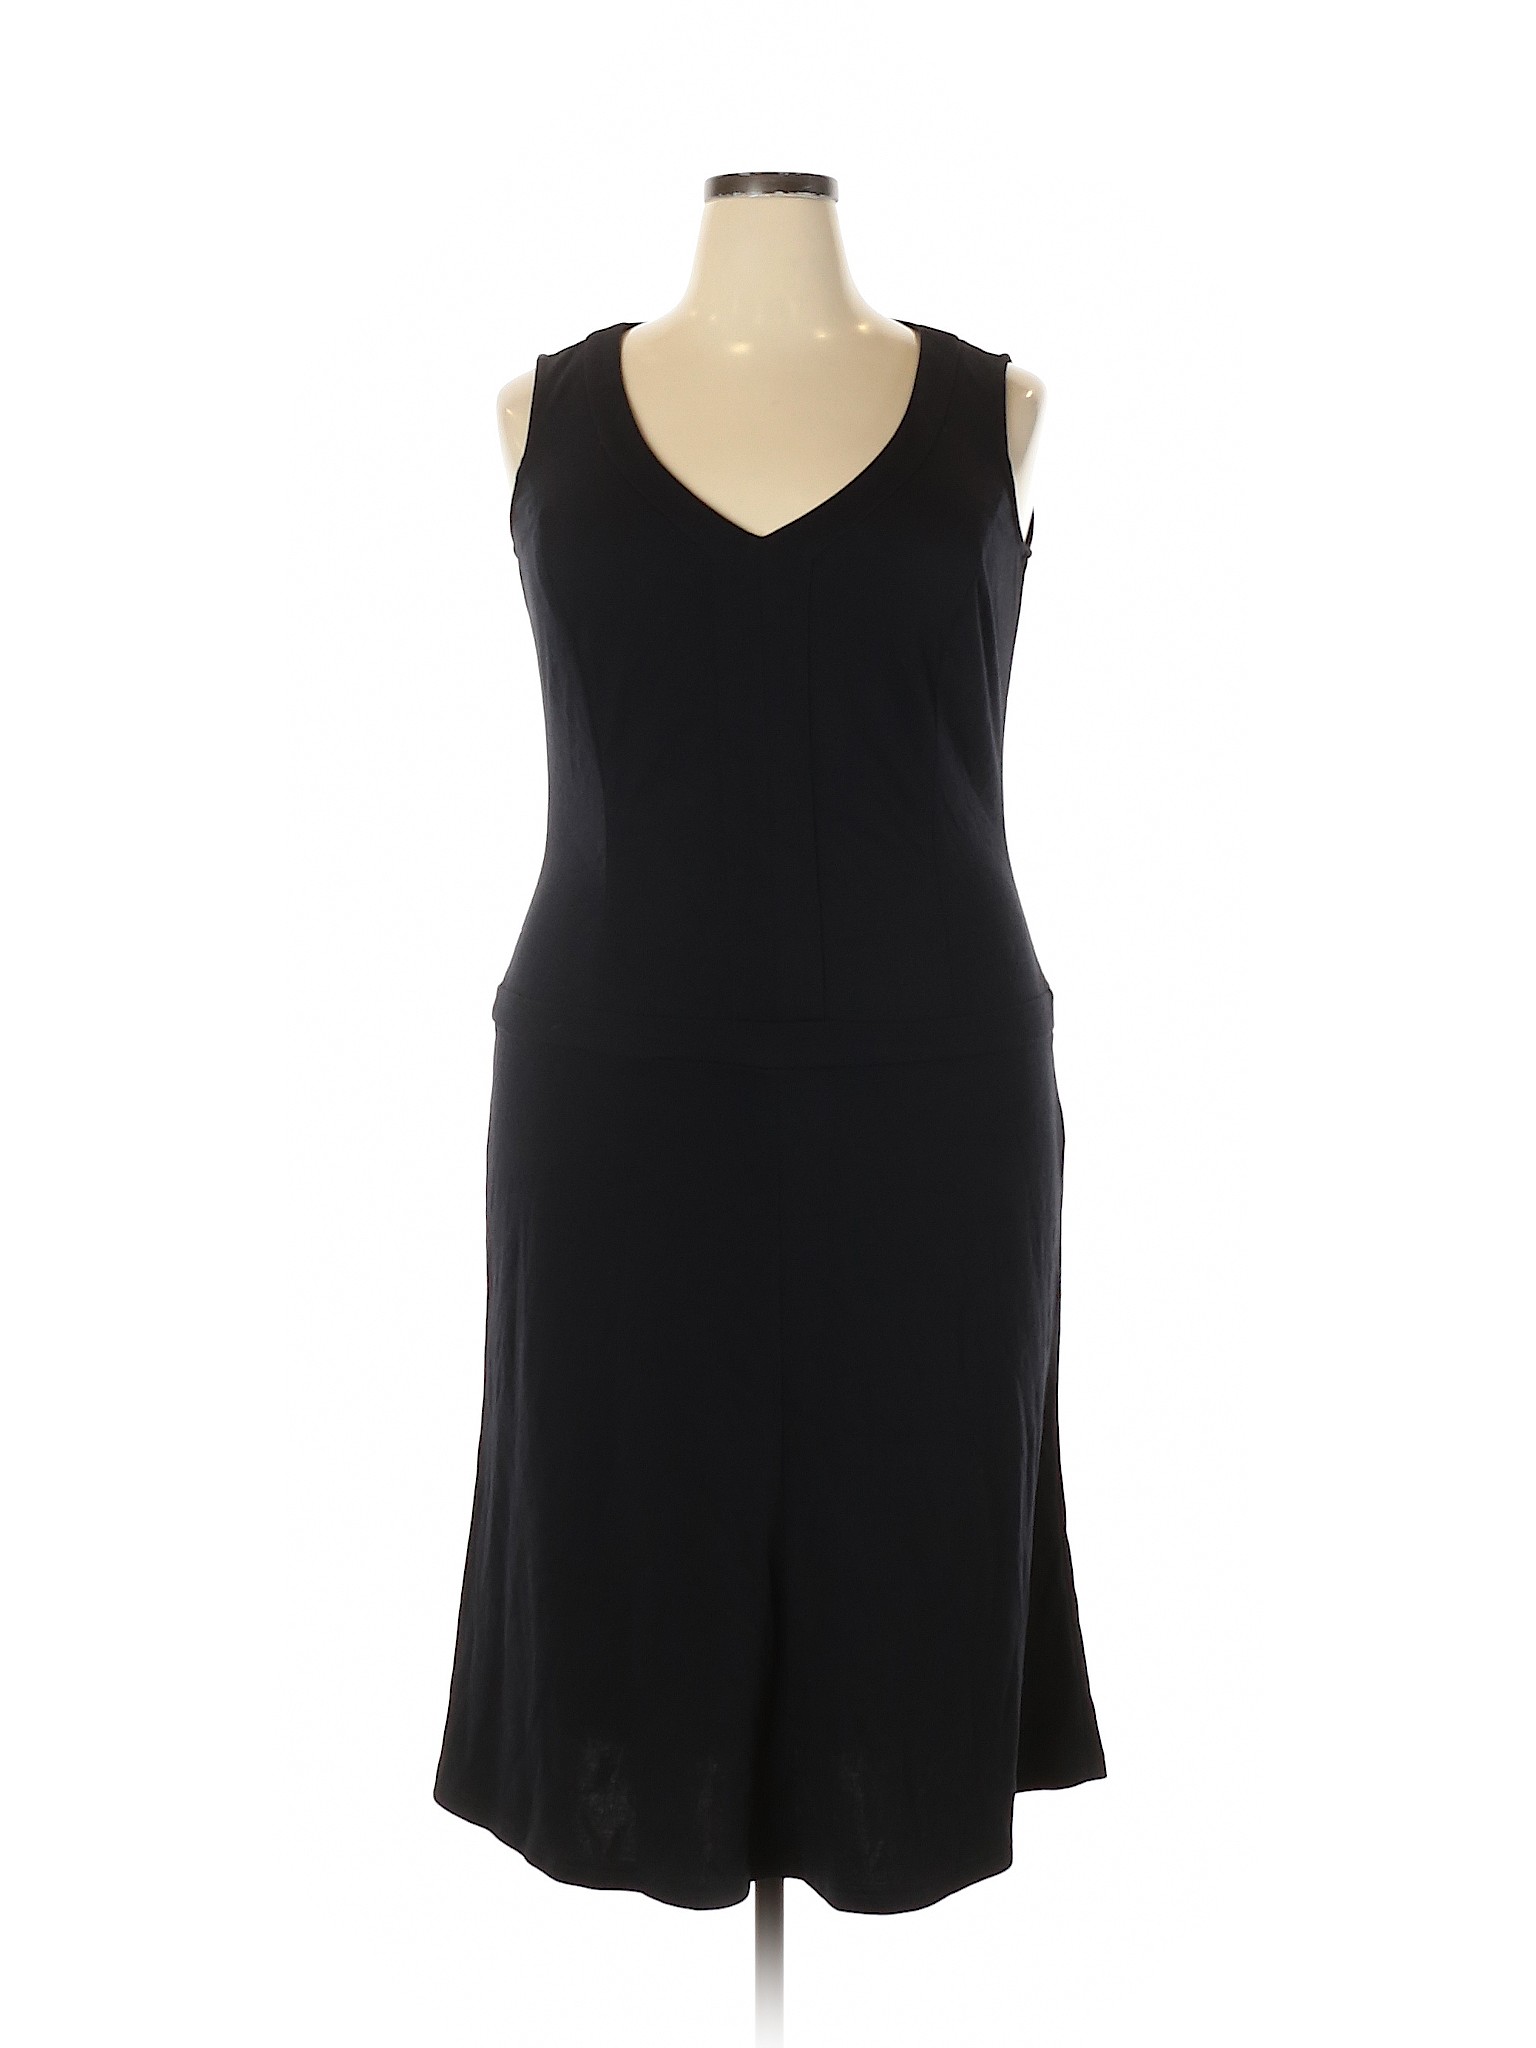 Spiegel Women Black Casual Dress 14 | eBay